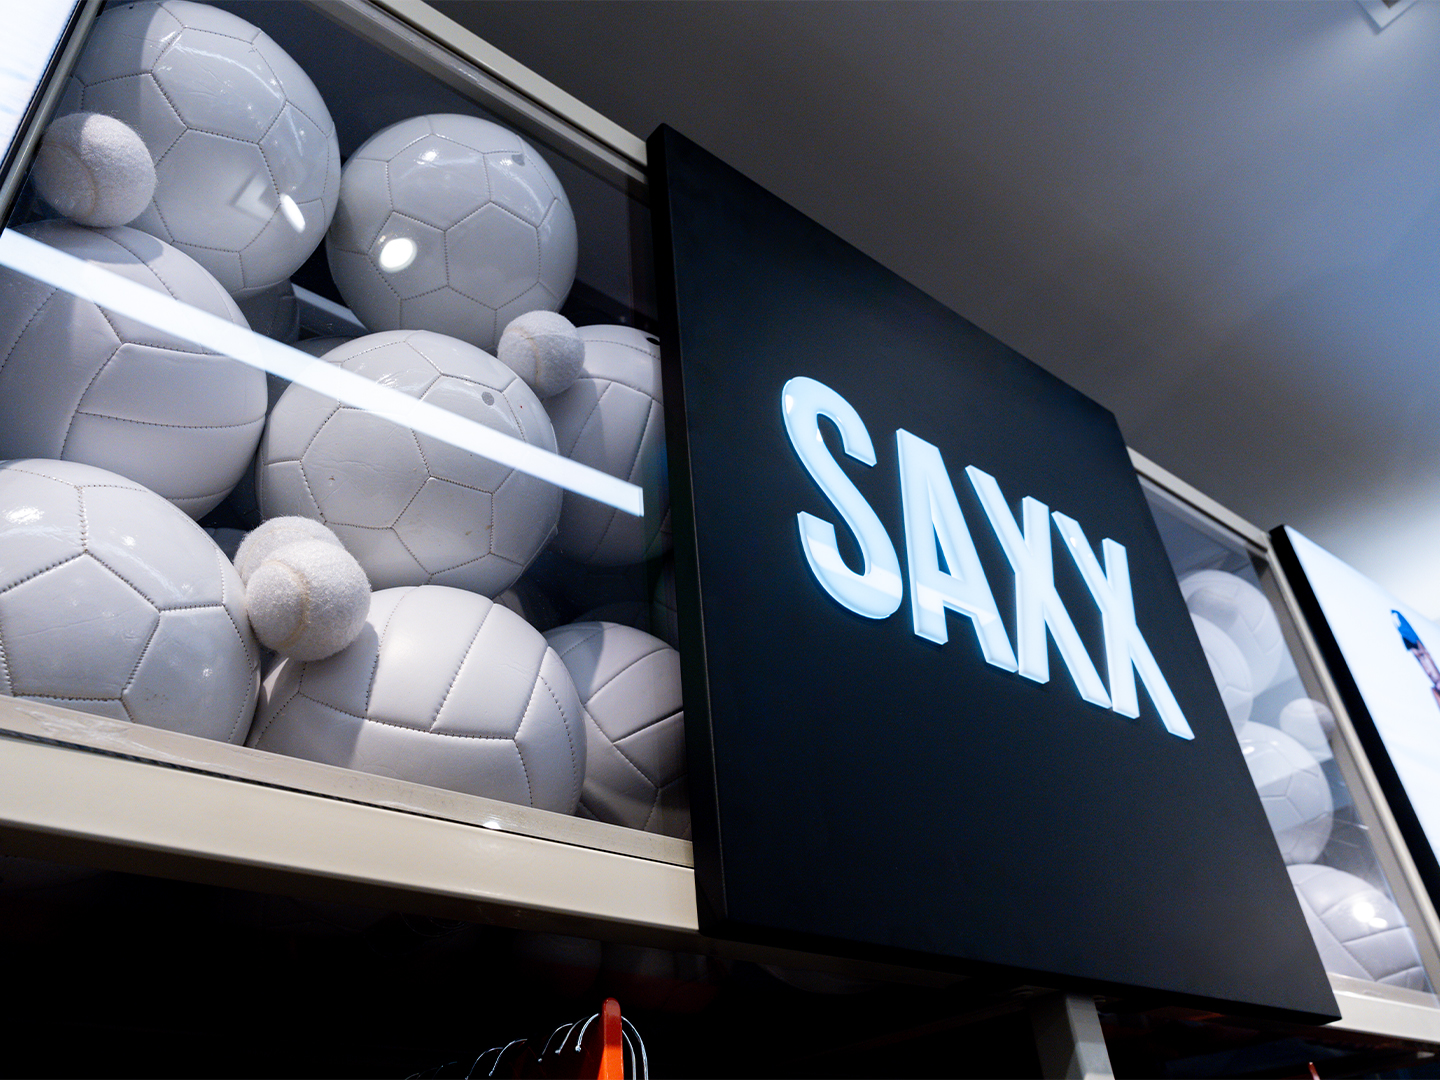 Conception de magasin Saxx - Meubles de vente au détail - Présentoirs sur mesure - Affichages sur mesure